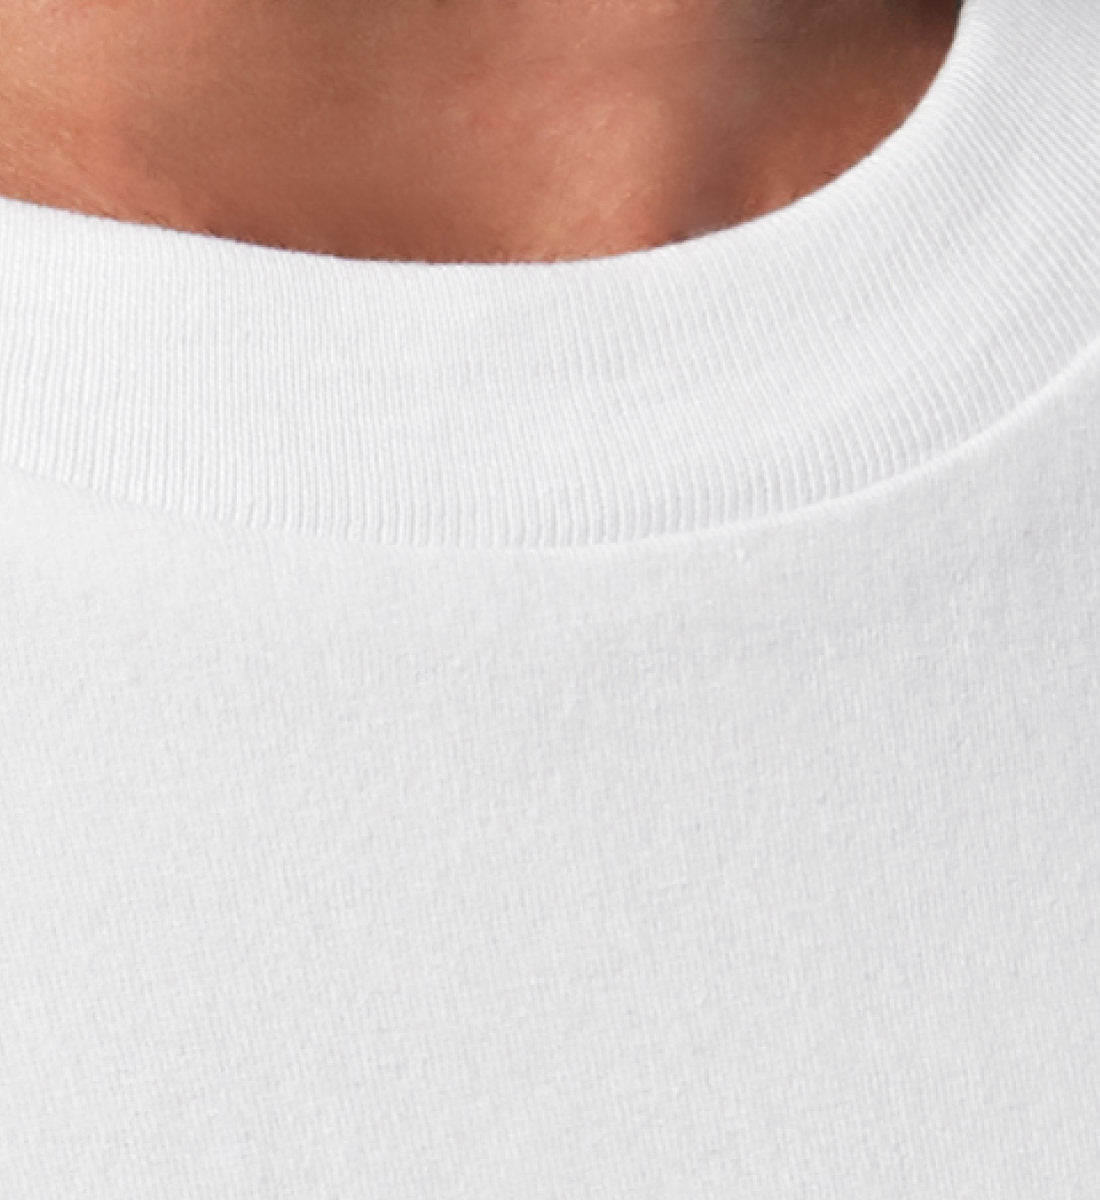 Weißes T-Shirt Unisex Relaxed Fit für Frauen und Männer bedruckt mit dem Design der Roger Rockawoo Kollektion reckless life